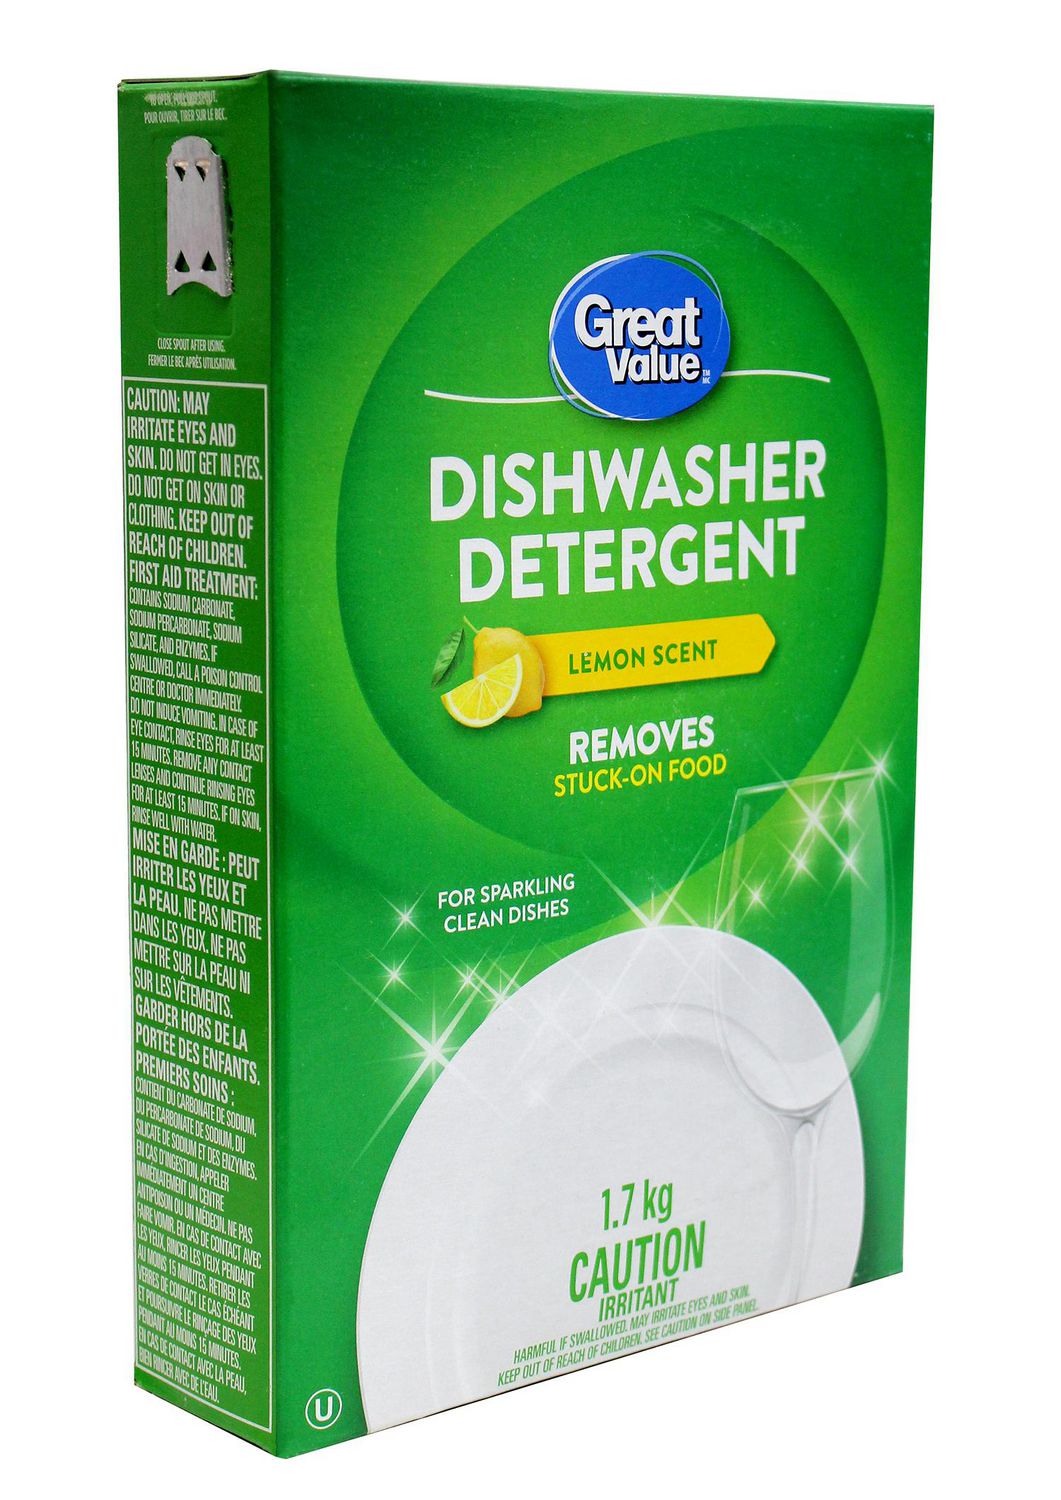 Produits clean: dans le rayon des produits ménagers, la vaisselle (main et lave  vaisselle) - 40 ans et 4 enfants